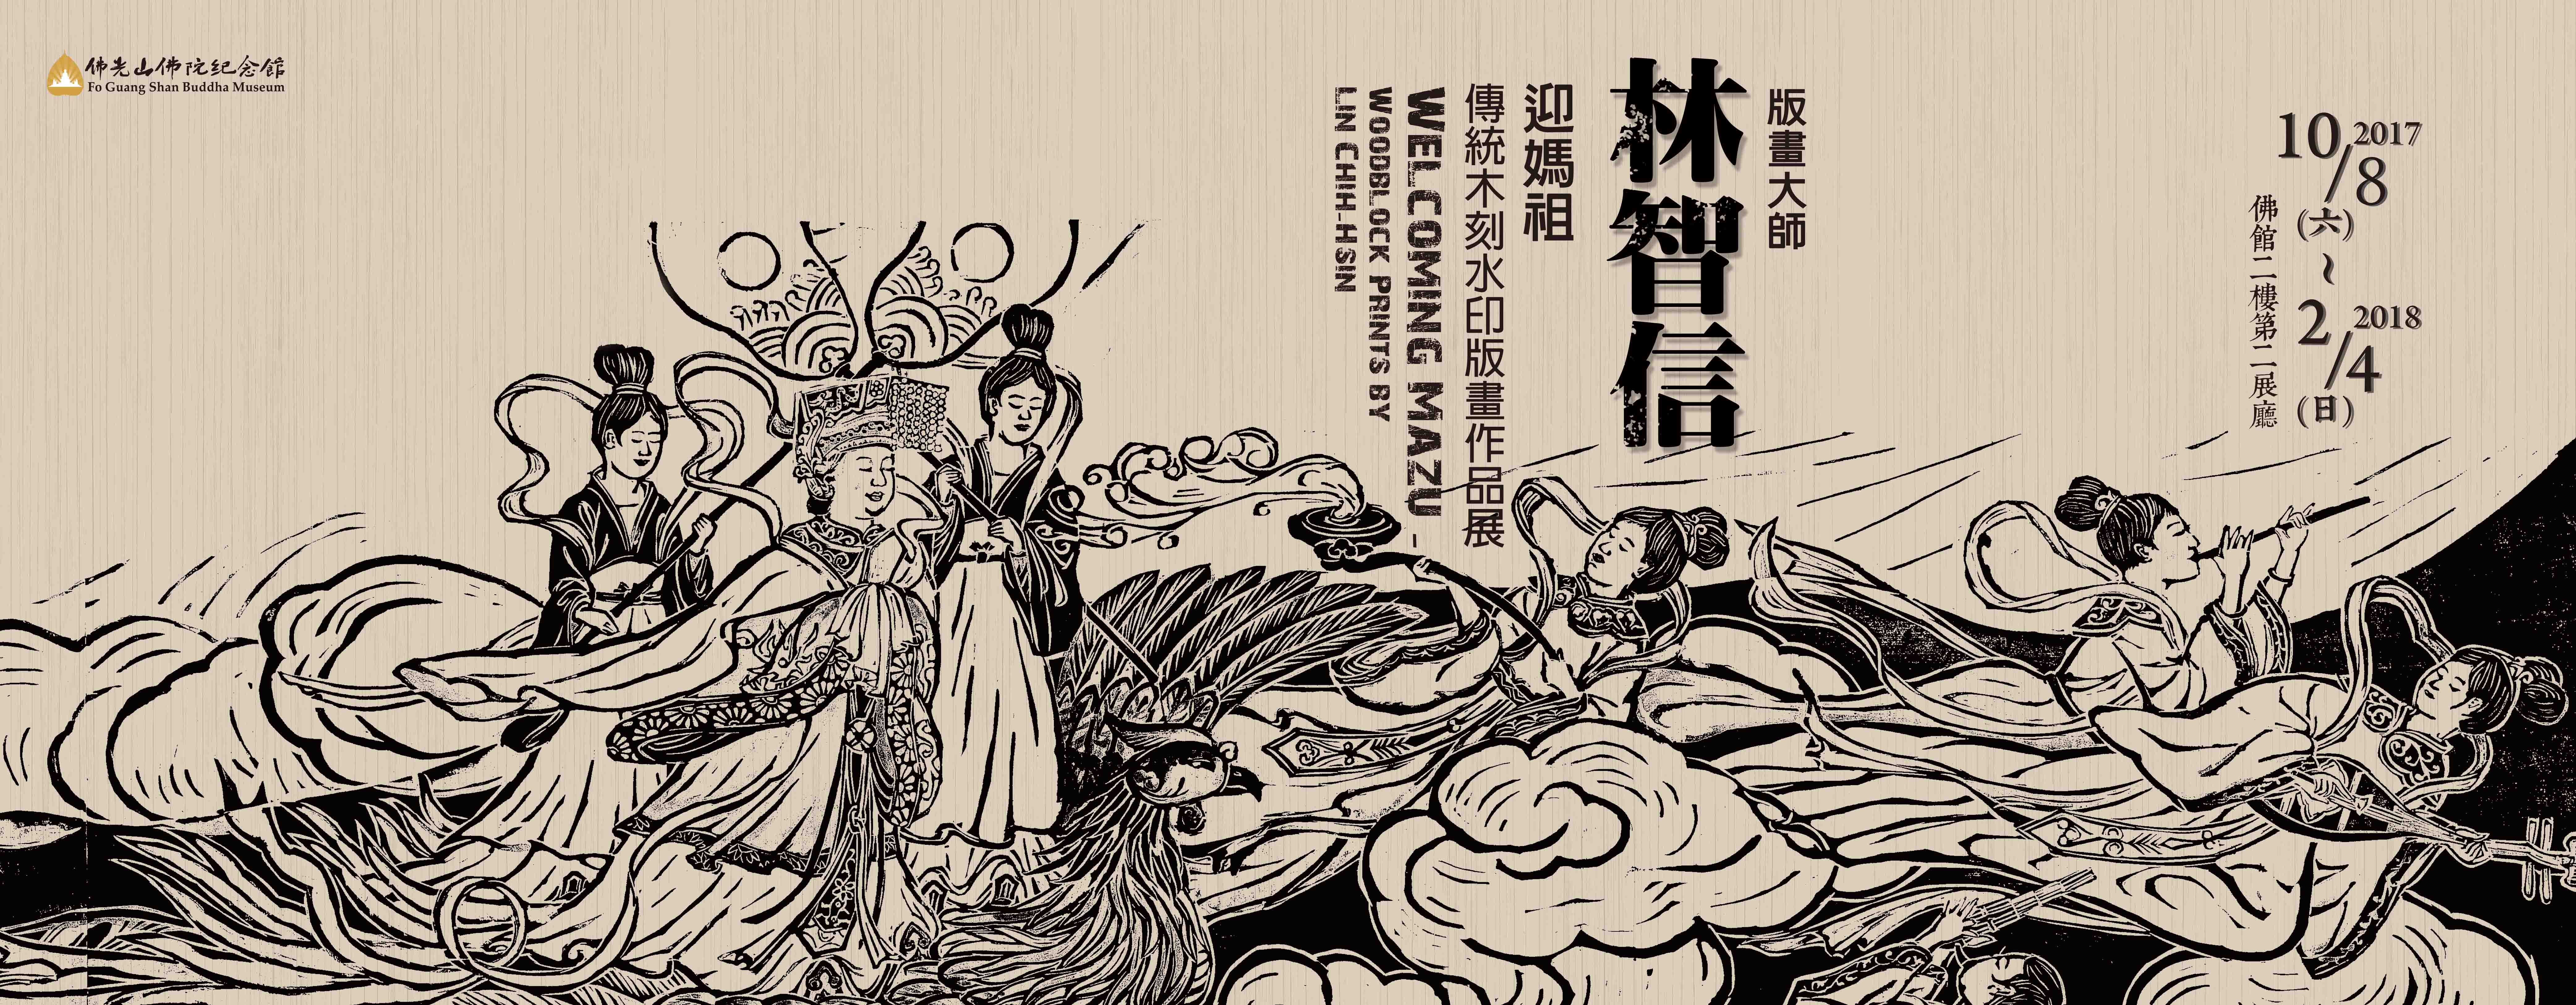 林智信—迎媽祖傳統木刻水印版畫作品展